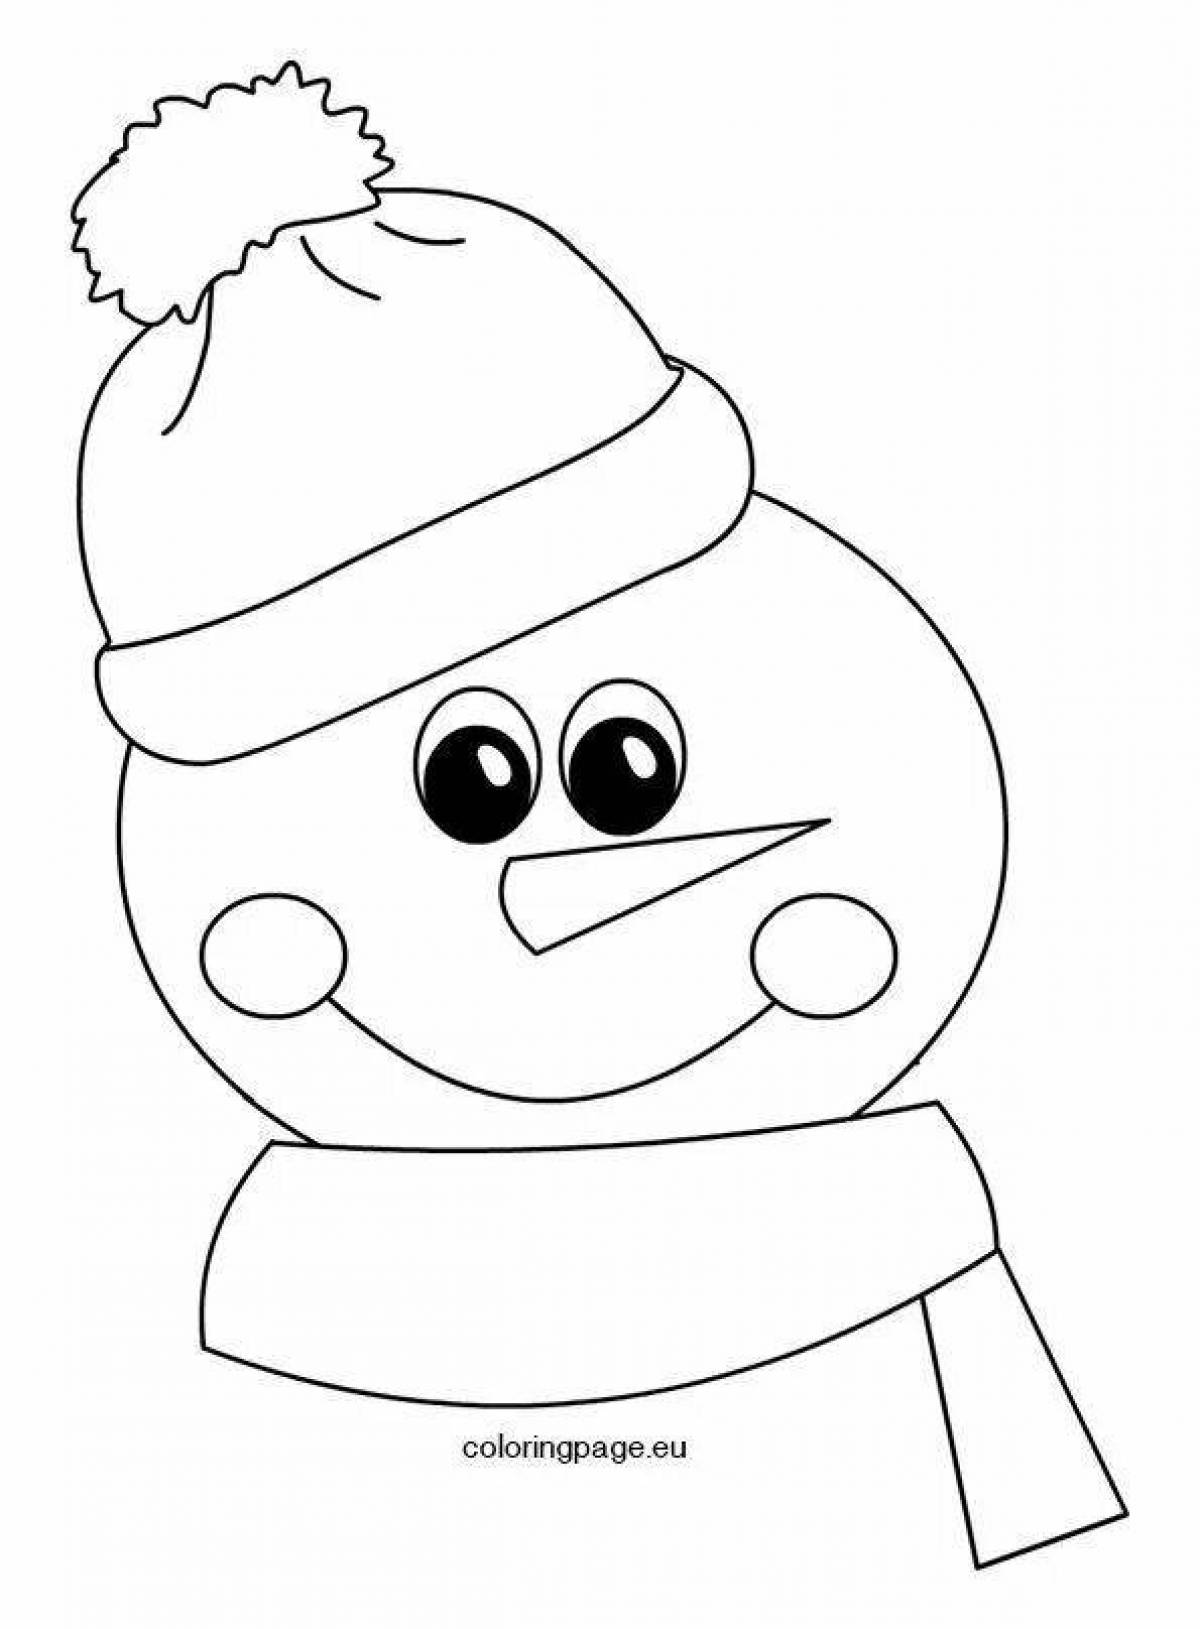 Фото Ликующие снеговики в шапках и шарфах в горошек